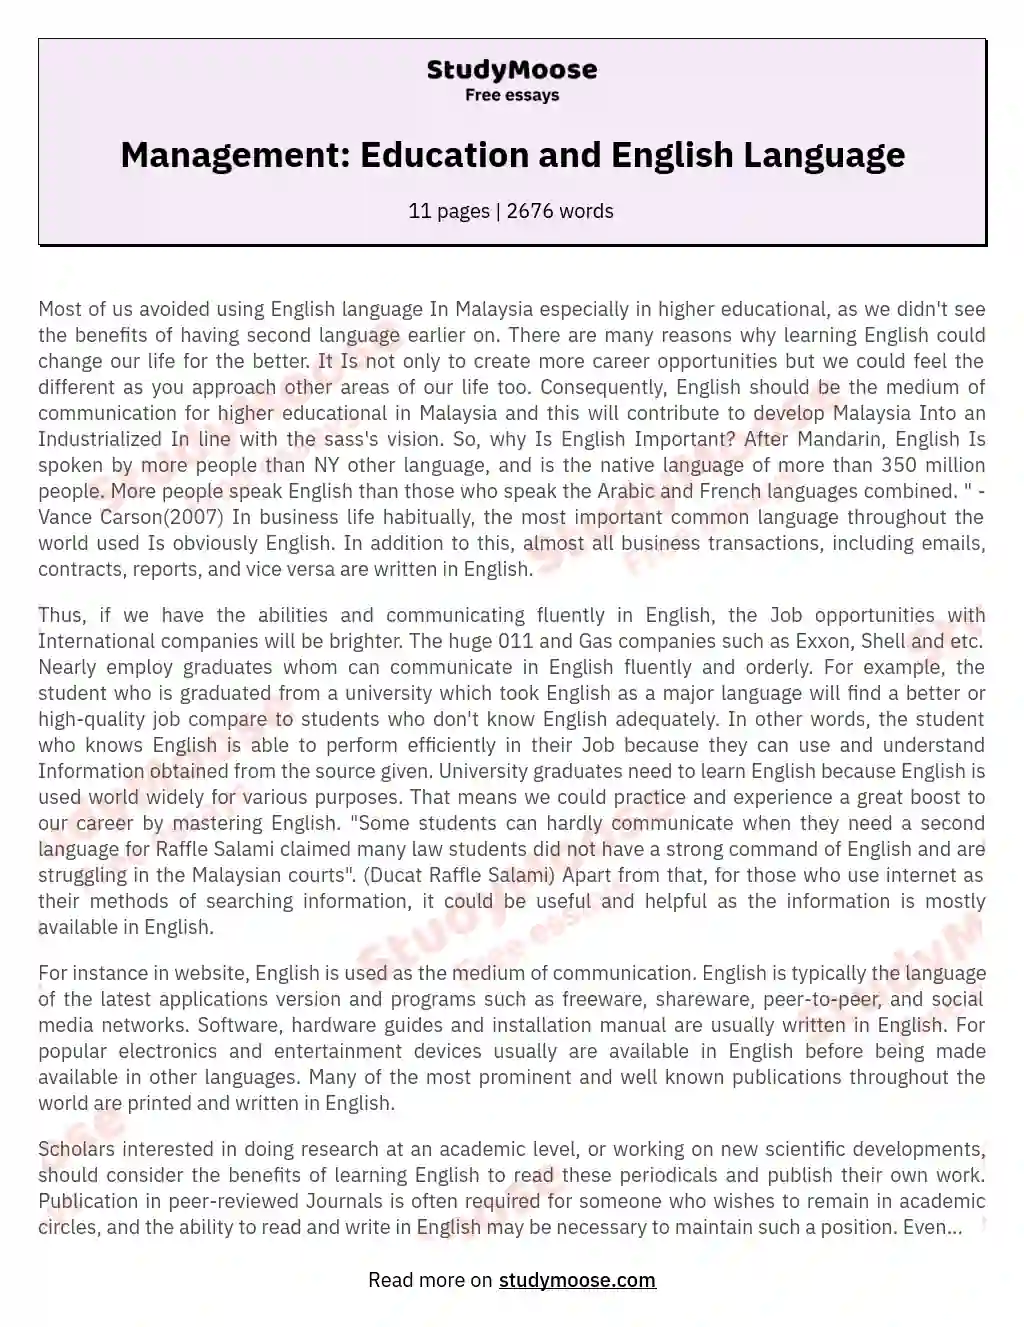 Management: Education and English Language essay